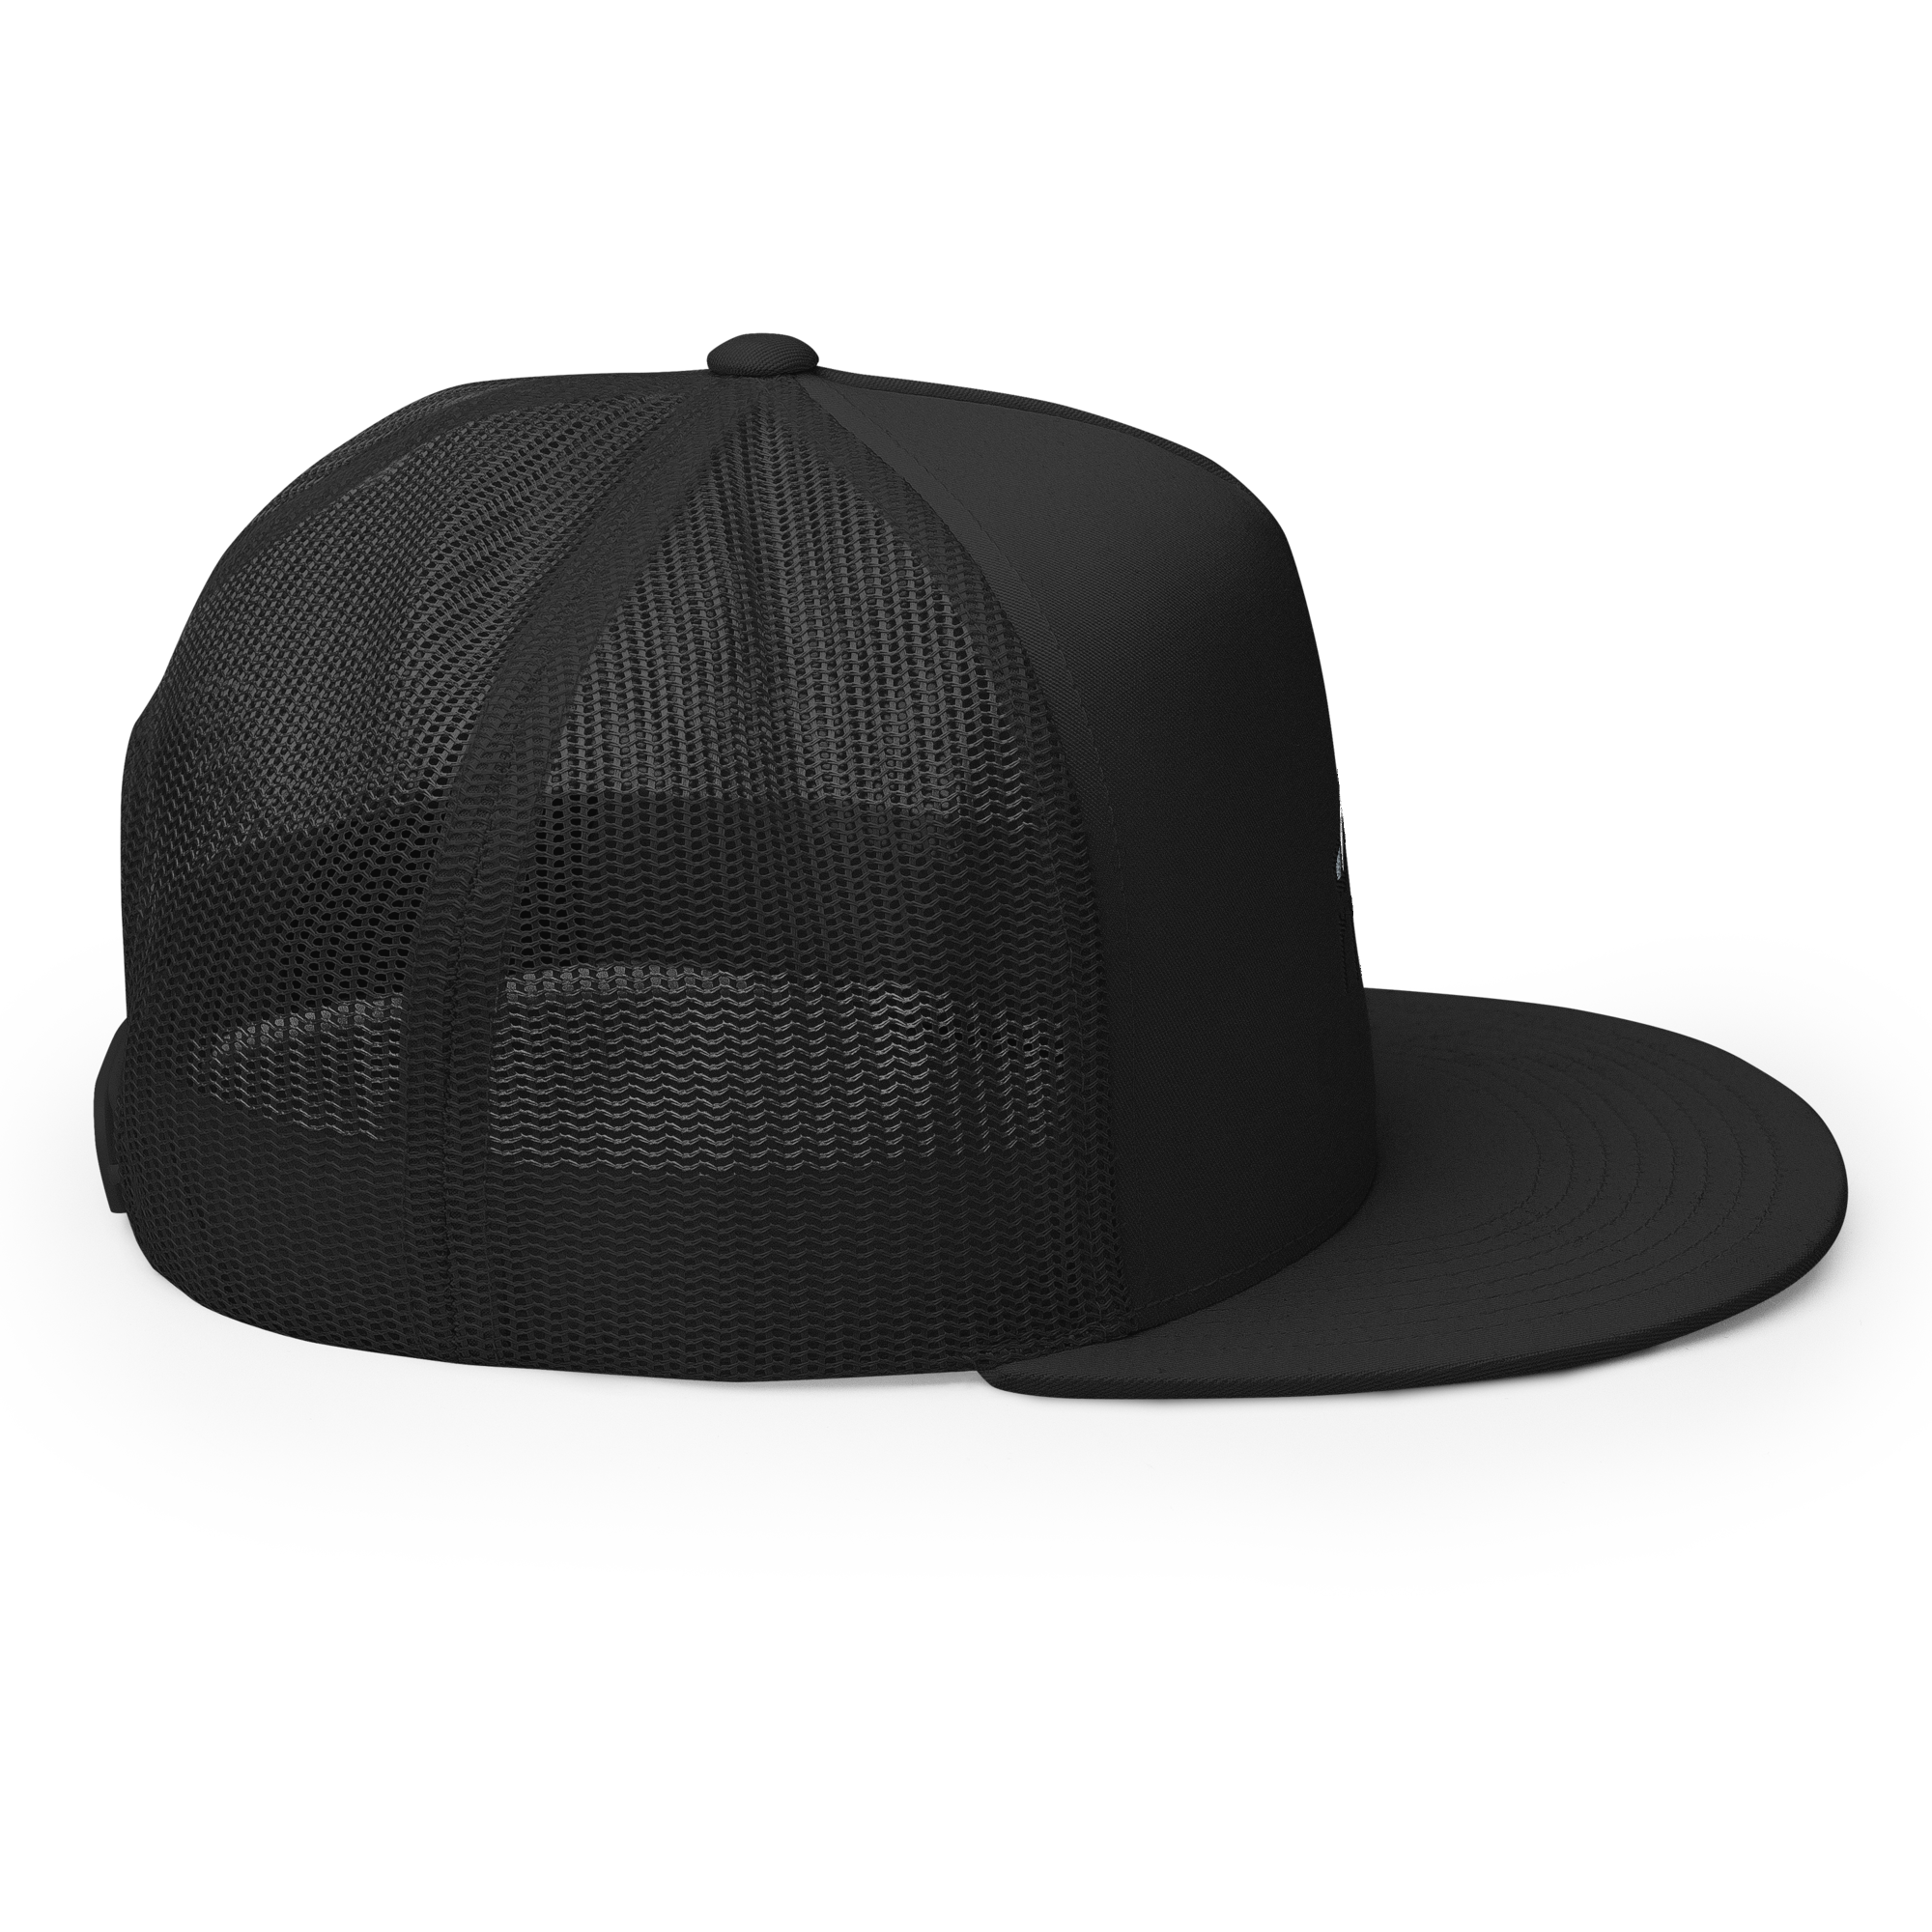 rmg low pro trucker hat side view black